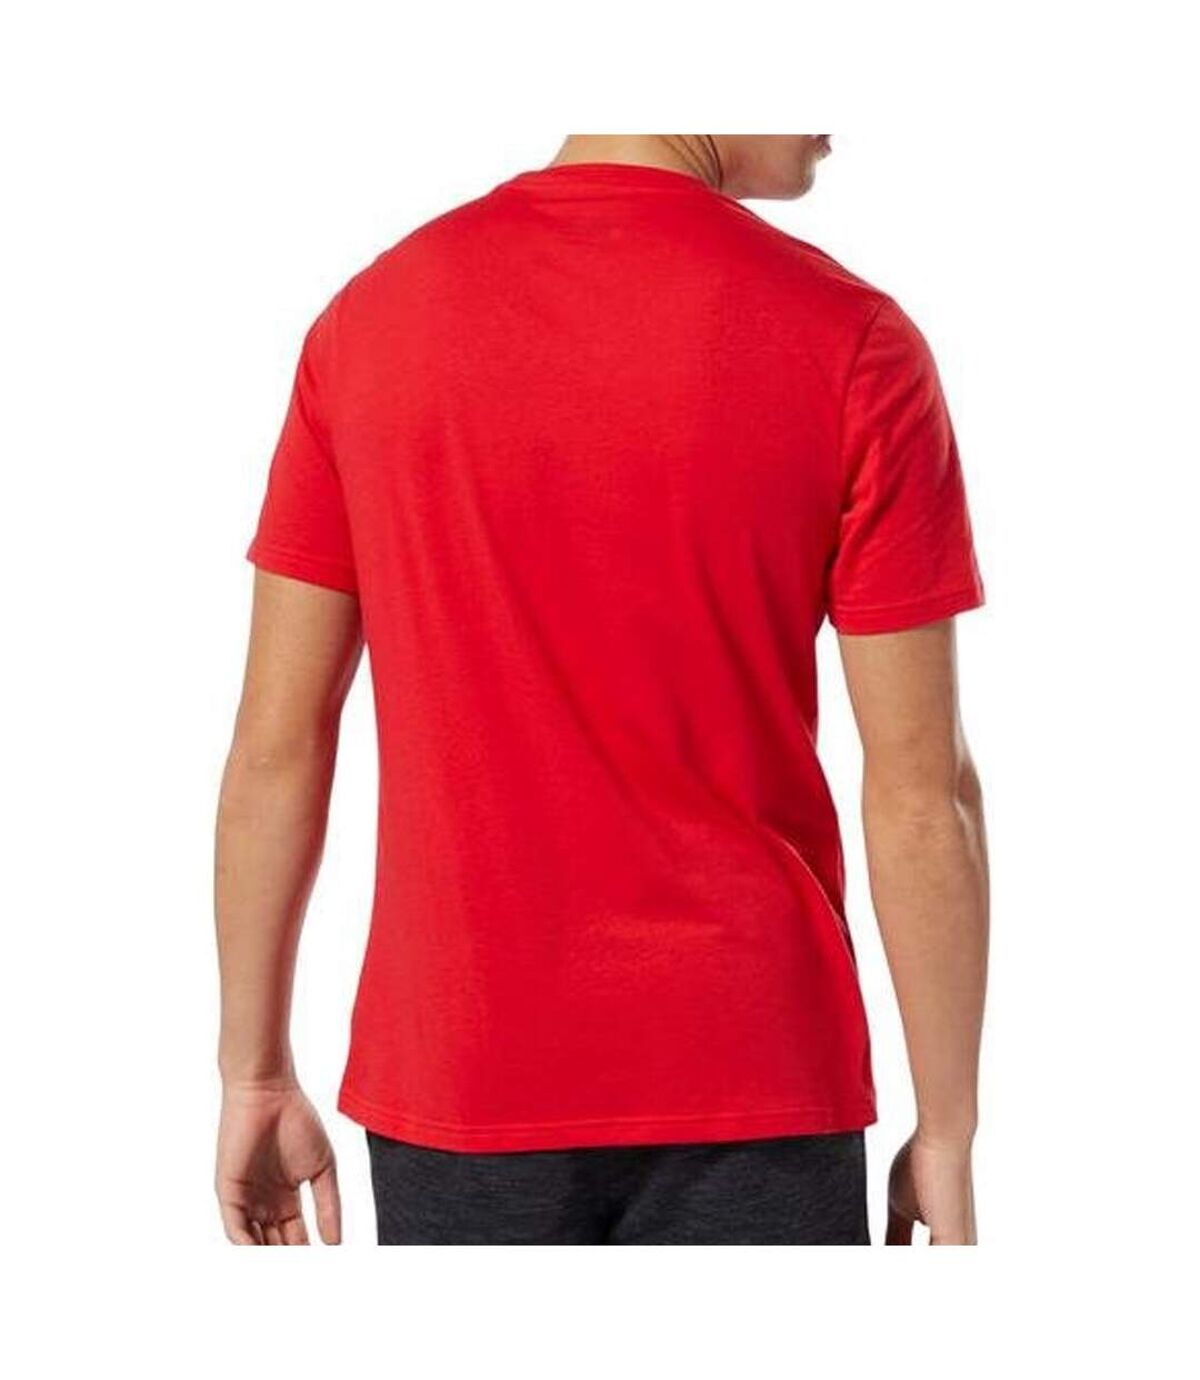 T-shirt Rouge Homme Reebok UFC